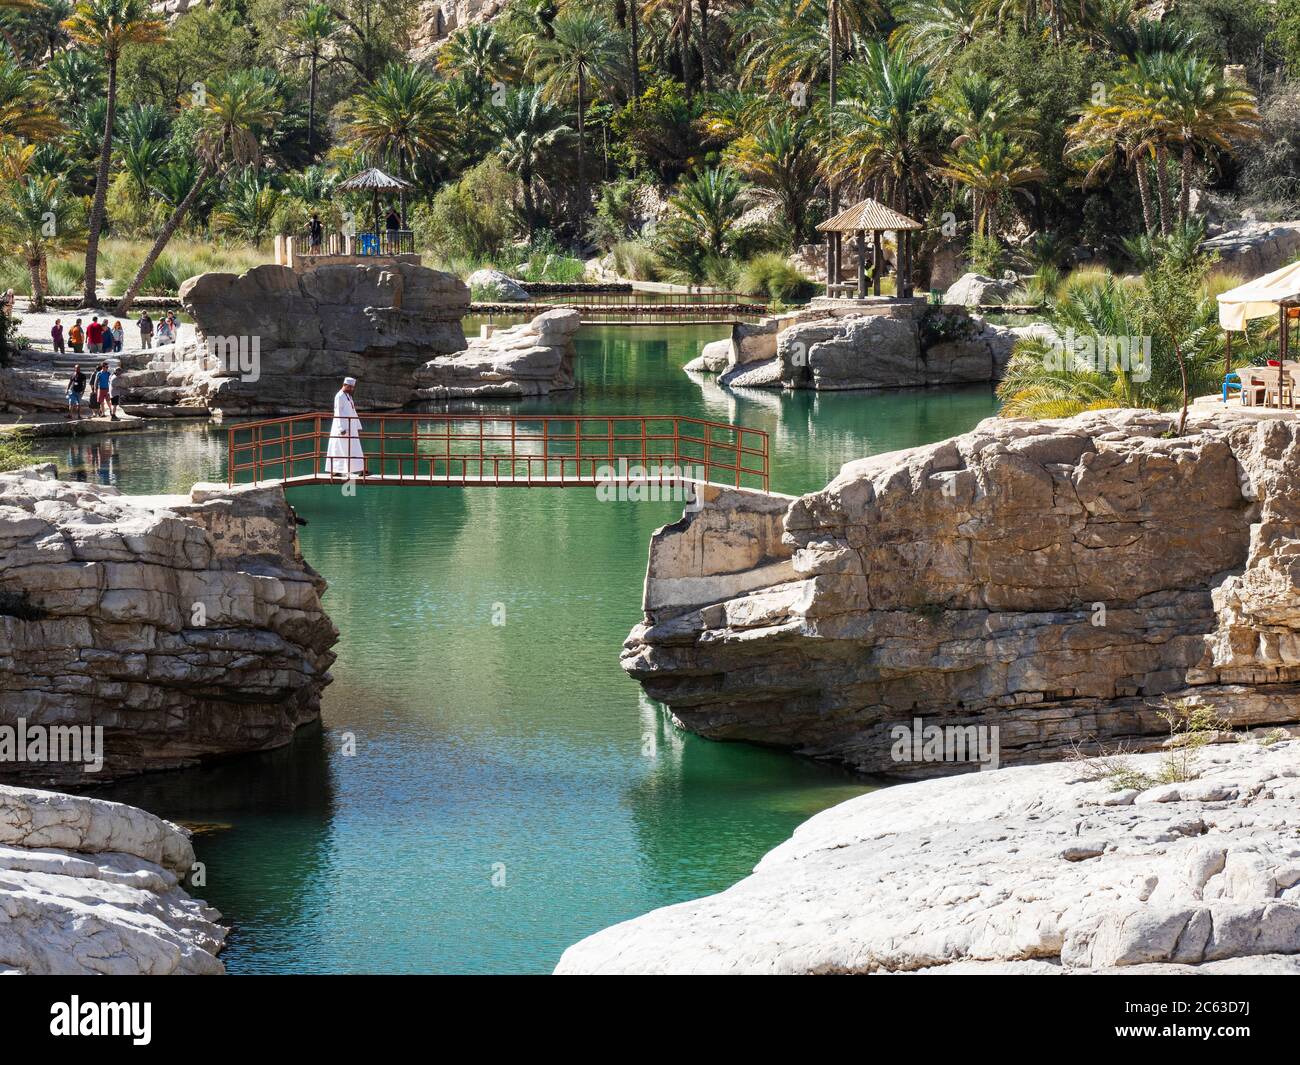 Piscinas naturales formadas por aguas de inundación en Wadi Bani Khalid, Sultanato de Omán. Foto de stock